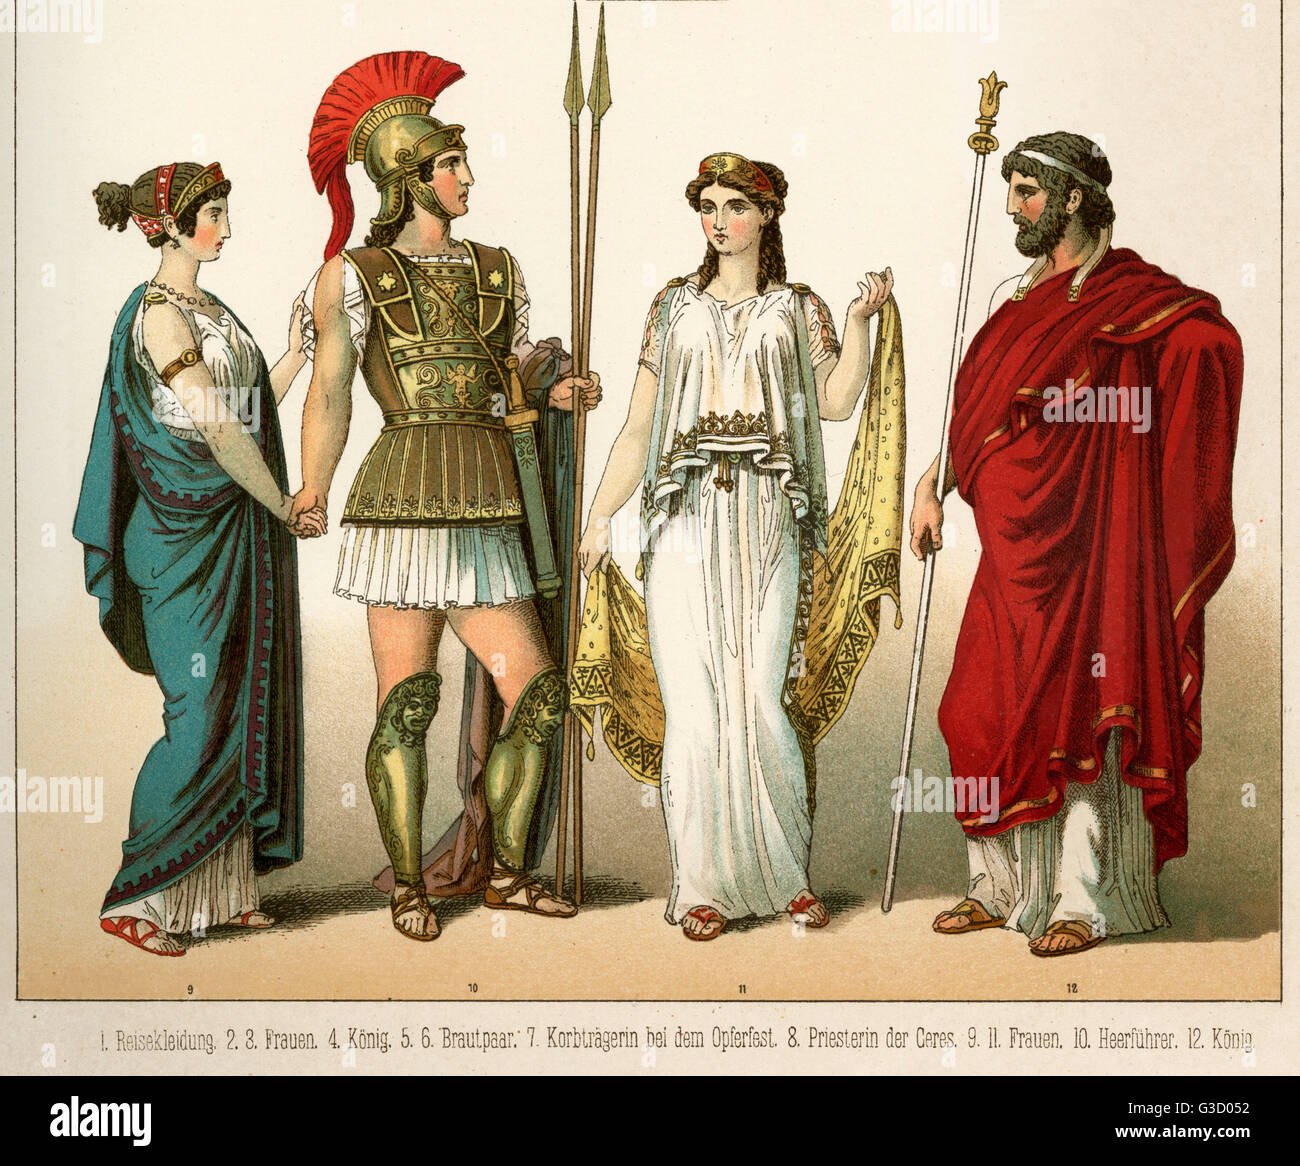 La antigua Grecia traje, vistiendo quitón, guerrero con armadura y casco, peplum blanca túnica y himation manto. Fecha: circa 500 A.C. Foto de stock